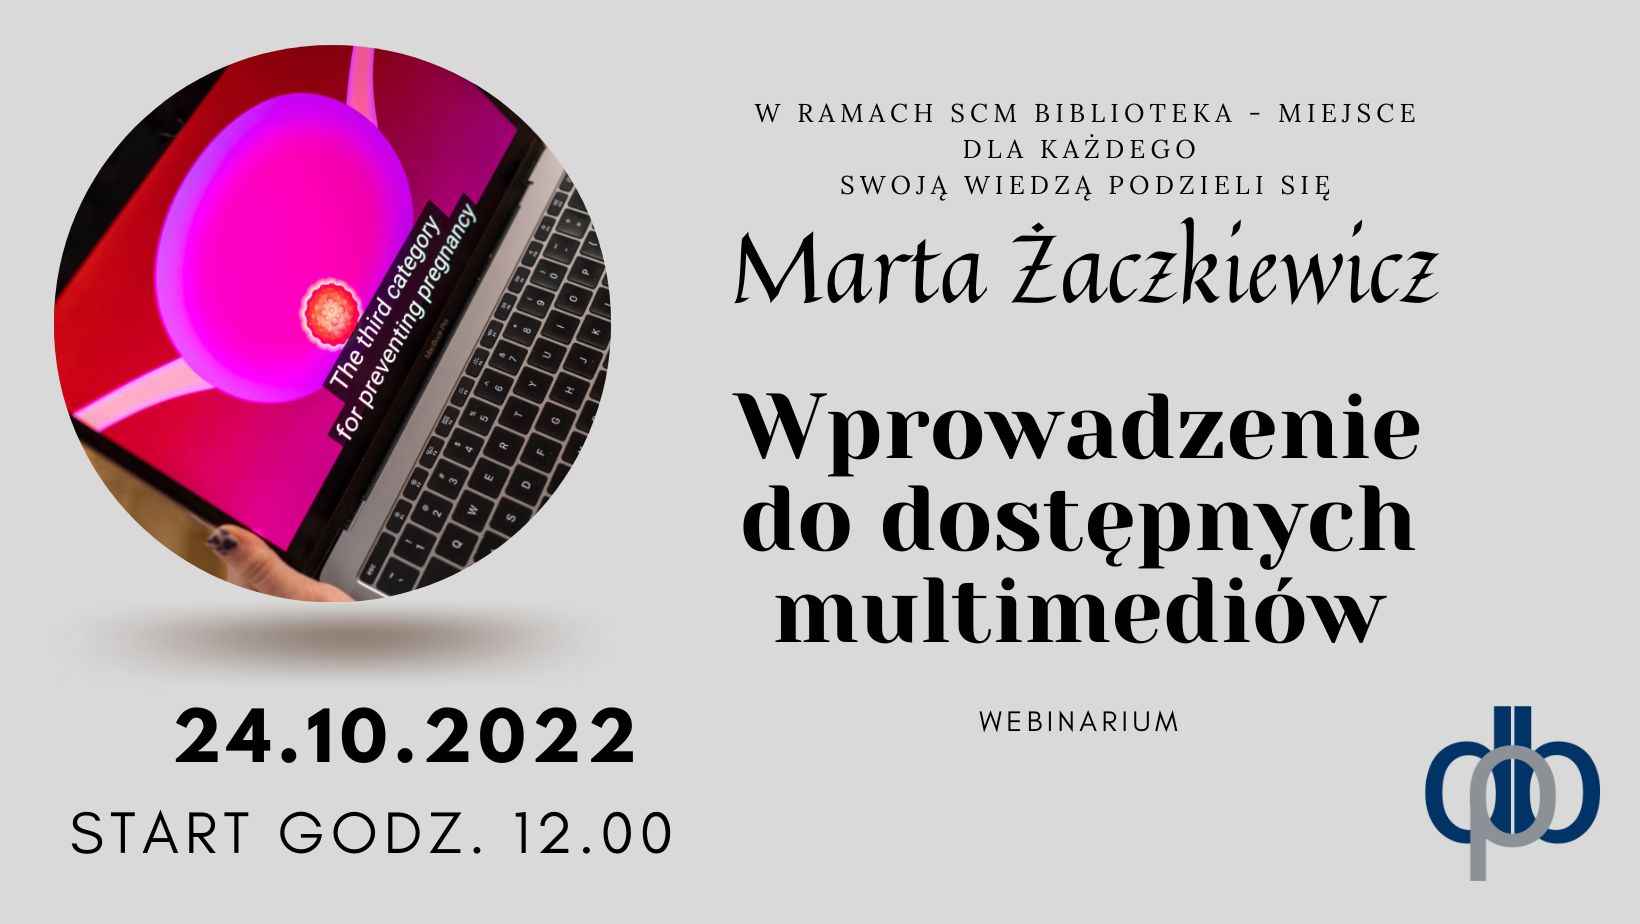 Obraz: Plakat promujący webinarium - Wprowadzenie do dostępnych multimediów, Marta Żaczkiewicz.